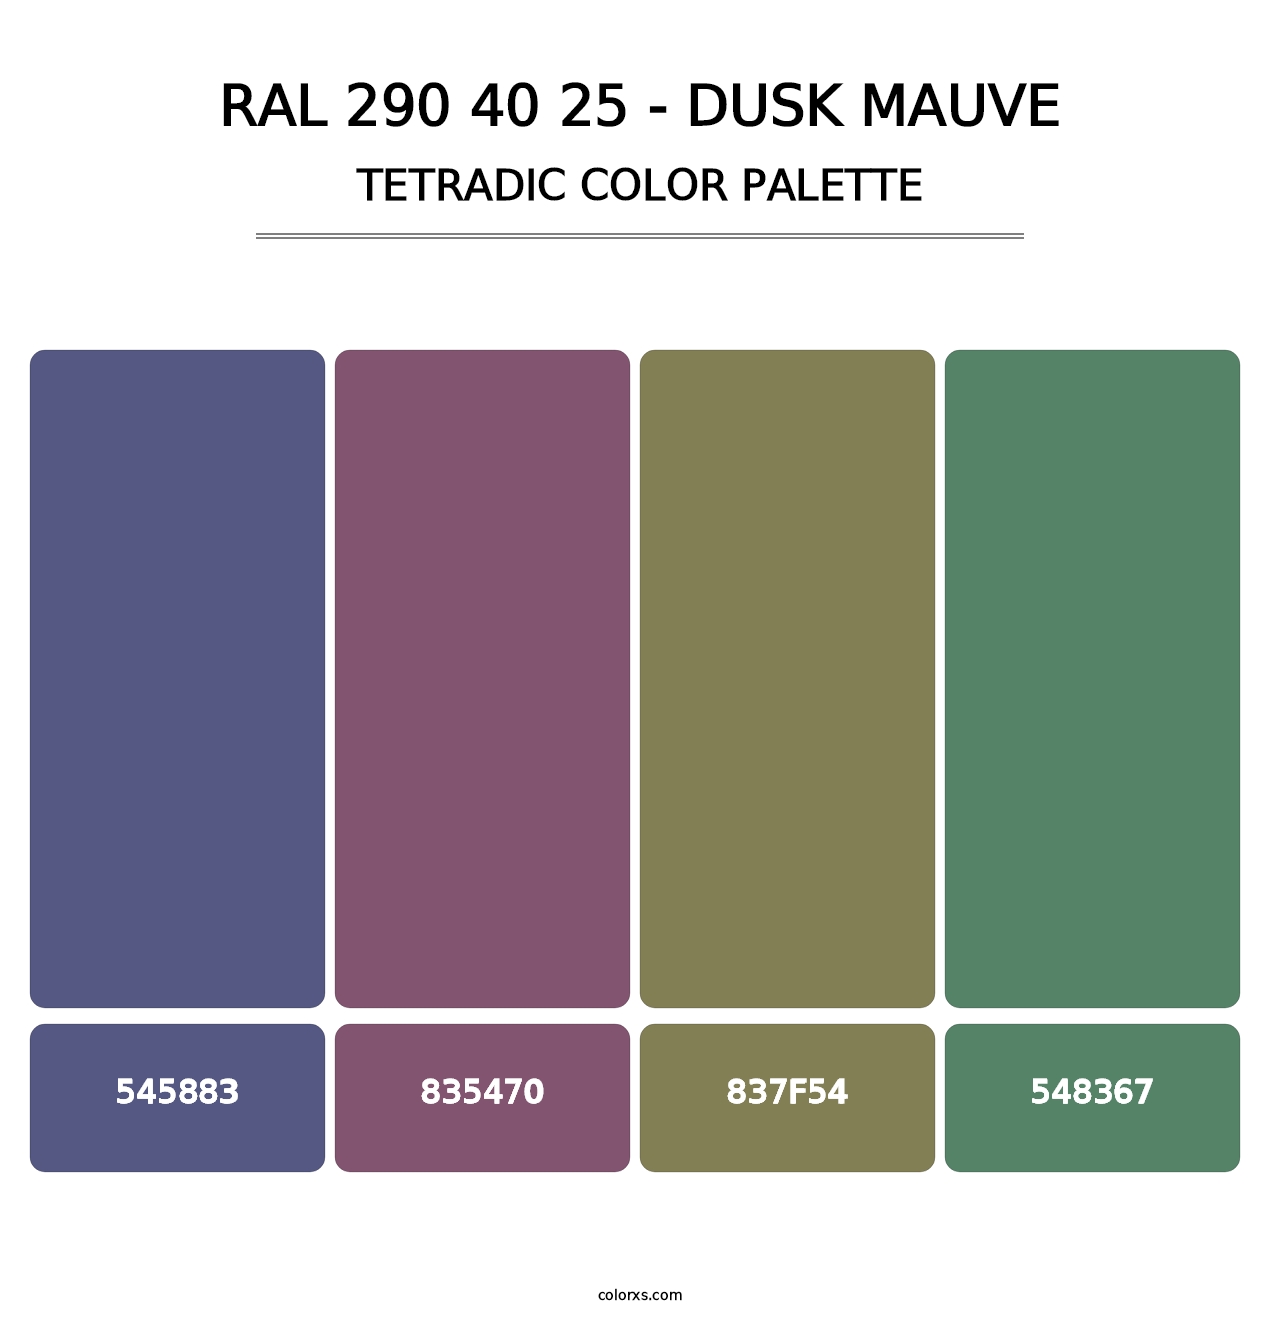 RAL 290 40 25 - Dusk Mauve - Tetradic Color Palette